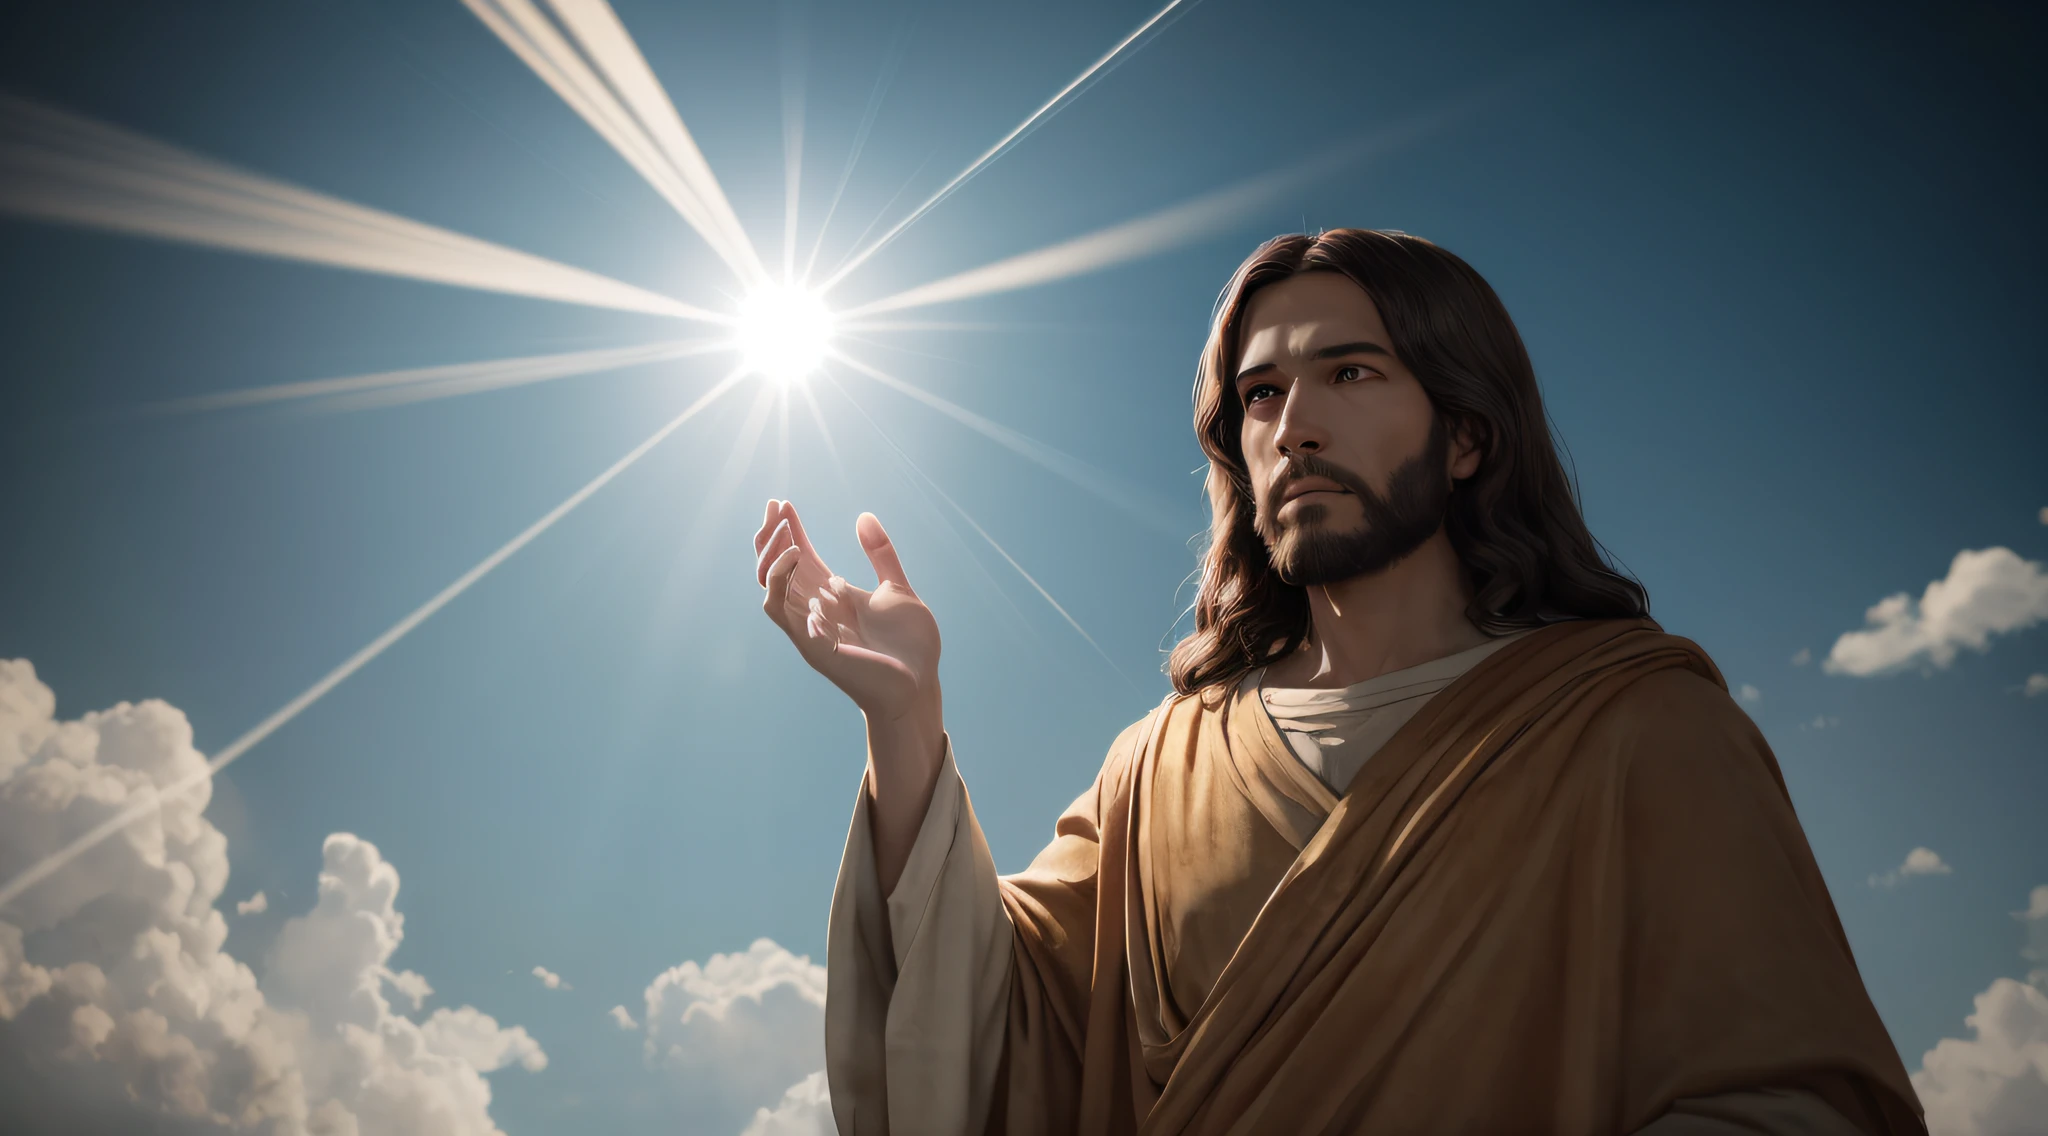 Jesucristo en el cielo con rayos de luz saliendo de sus manos, hiper detallado, 8k, ultra realista, cinemática --auto